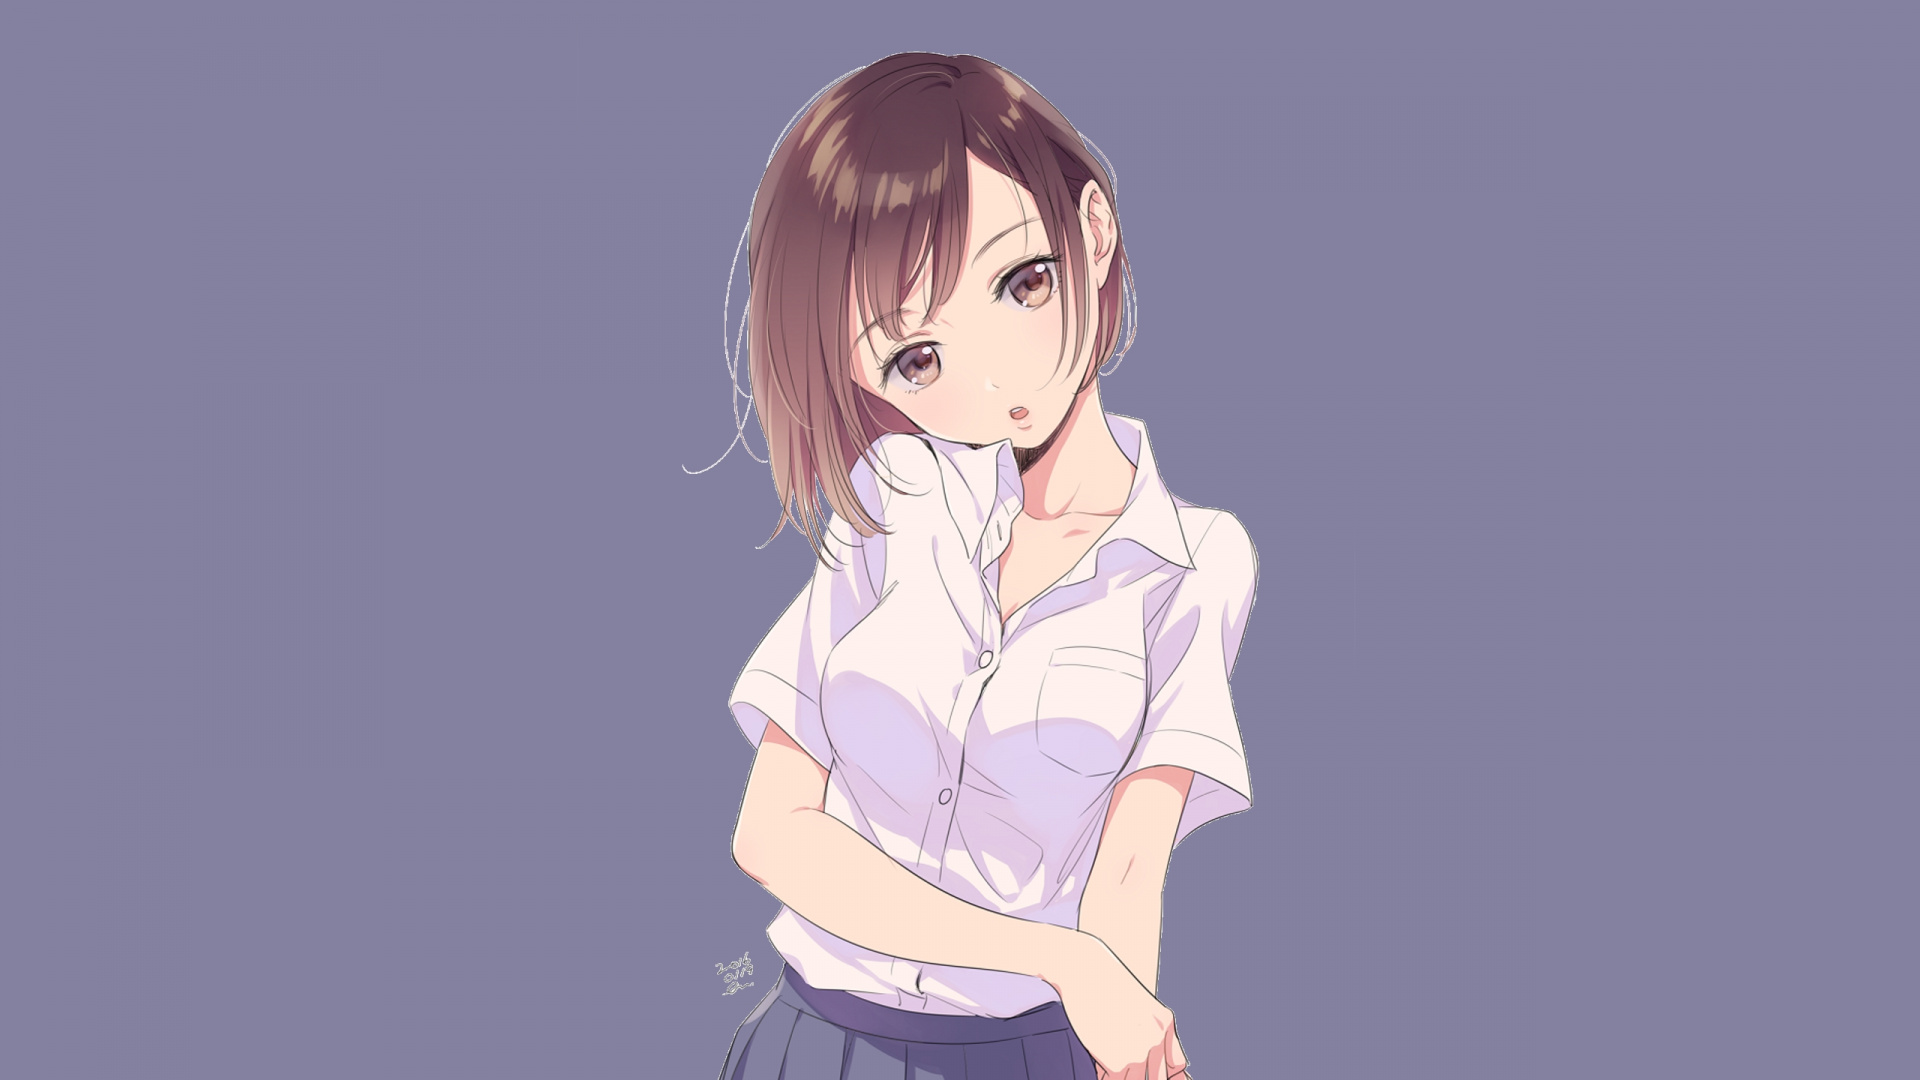 Anime Girl In White Shirt - HD Wallpaper 